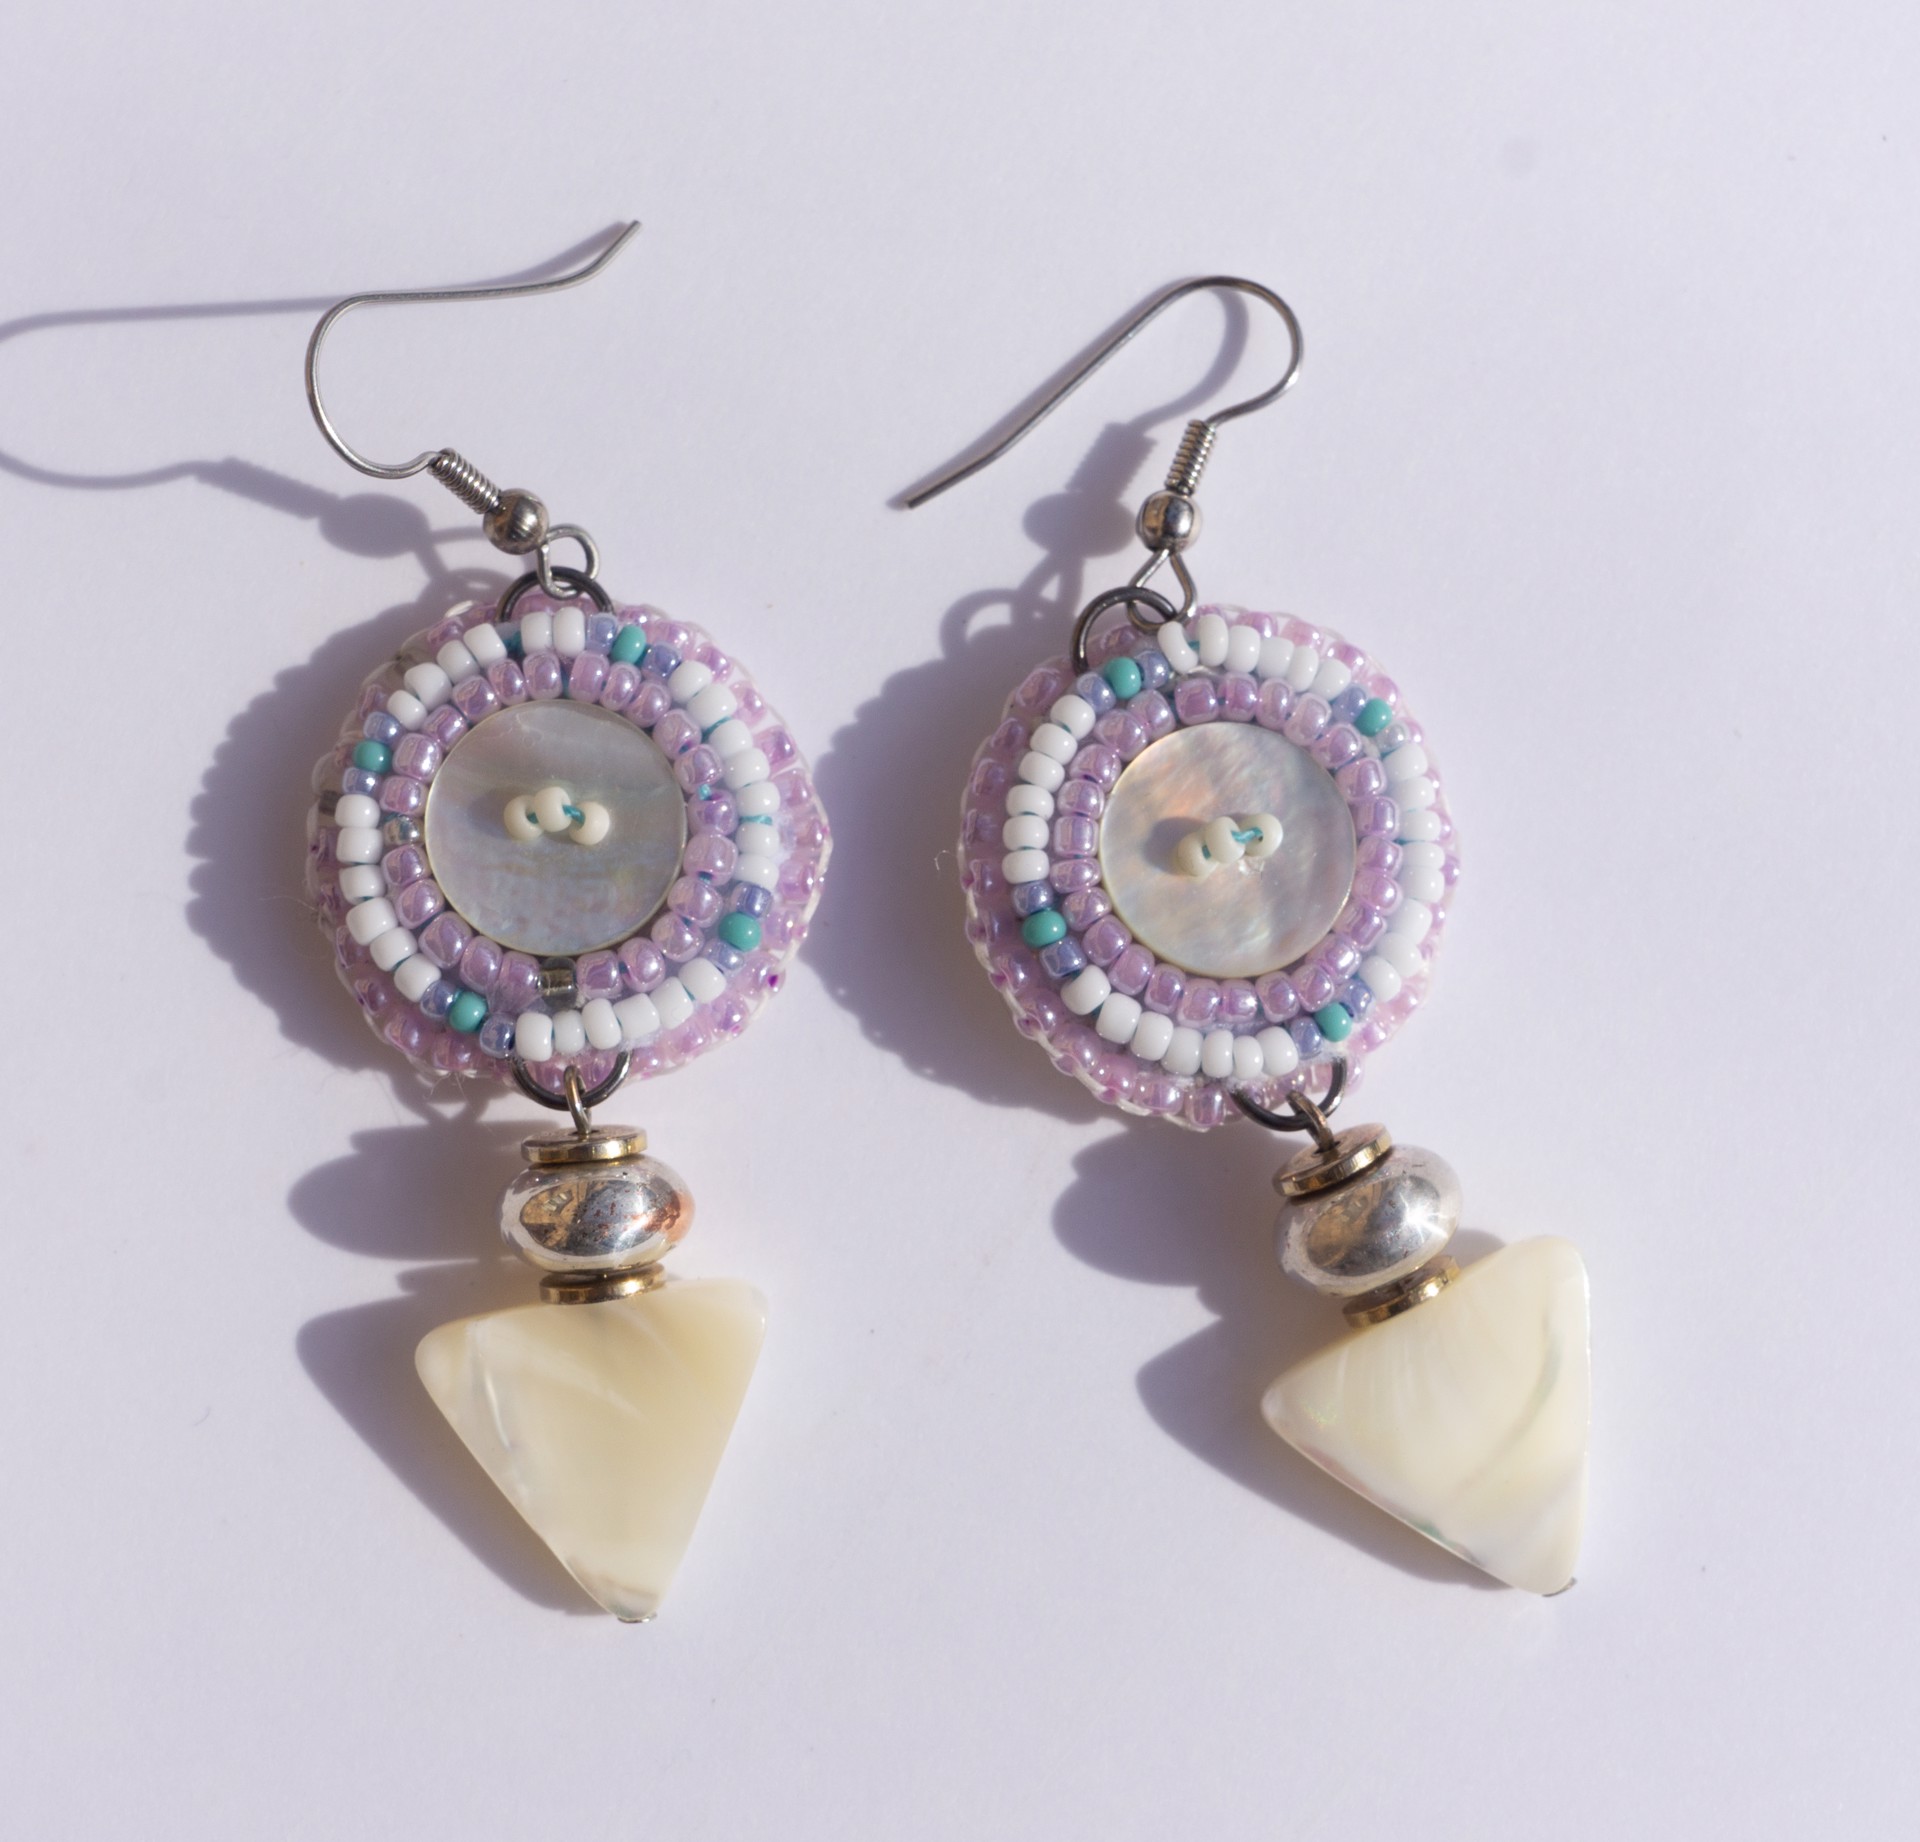 Shell bead earrings by Hattie Lee Mendoza